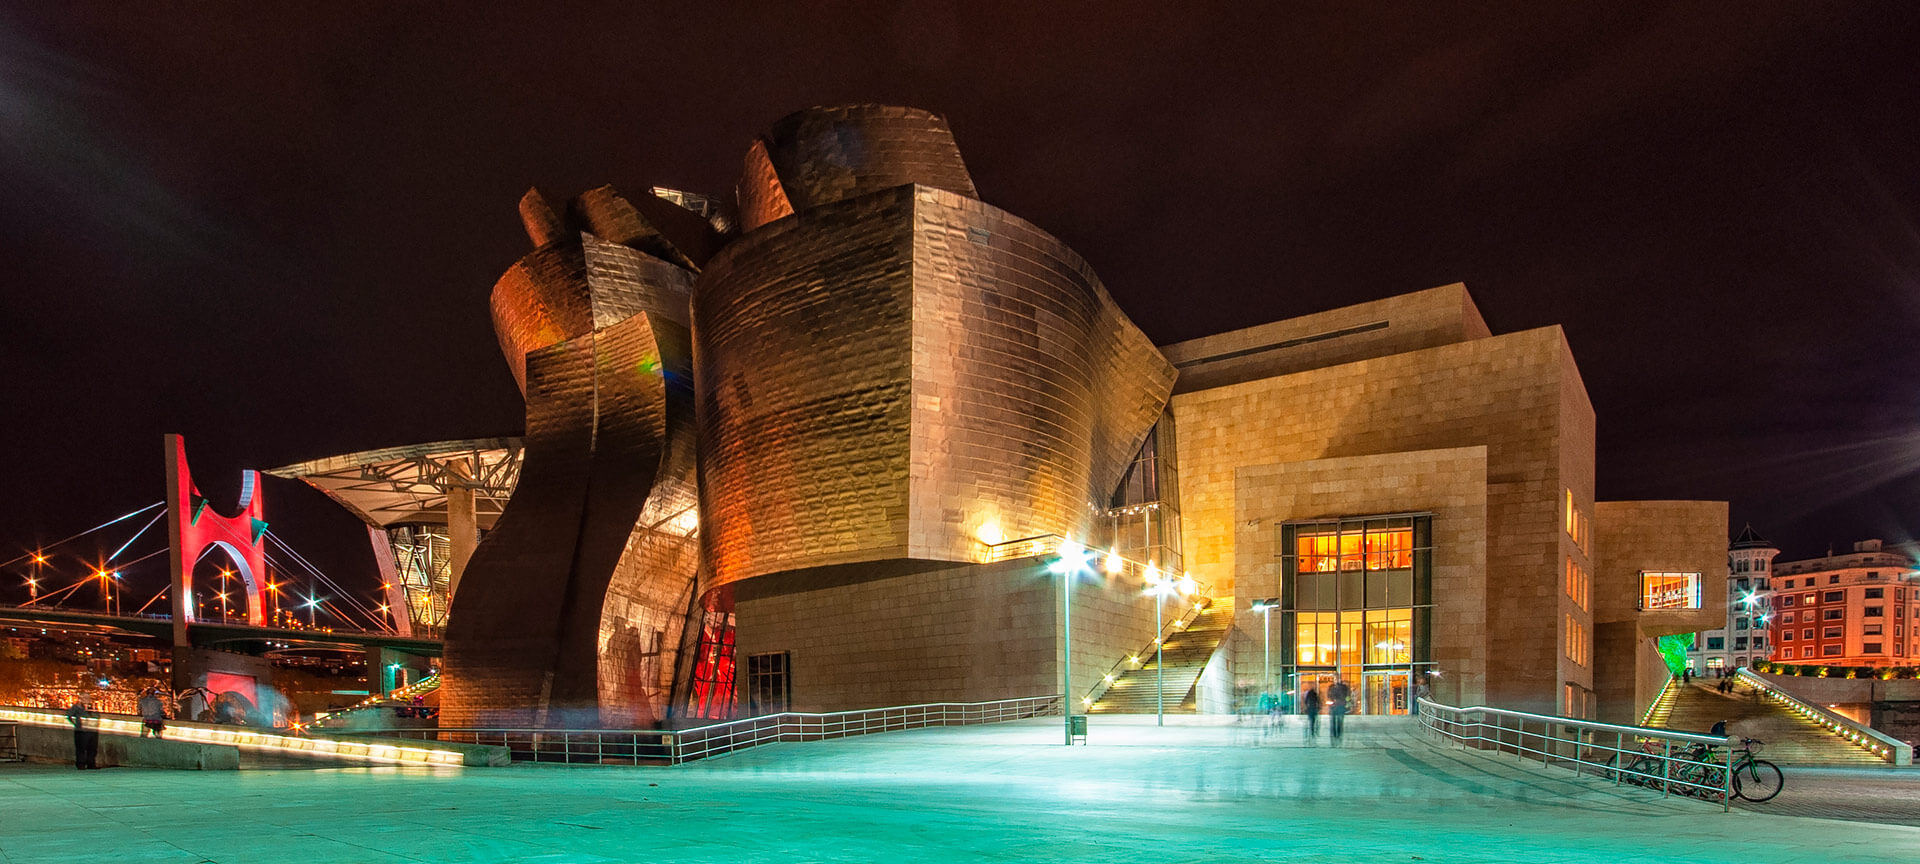 Musée Guggenheim, Bilbao